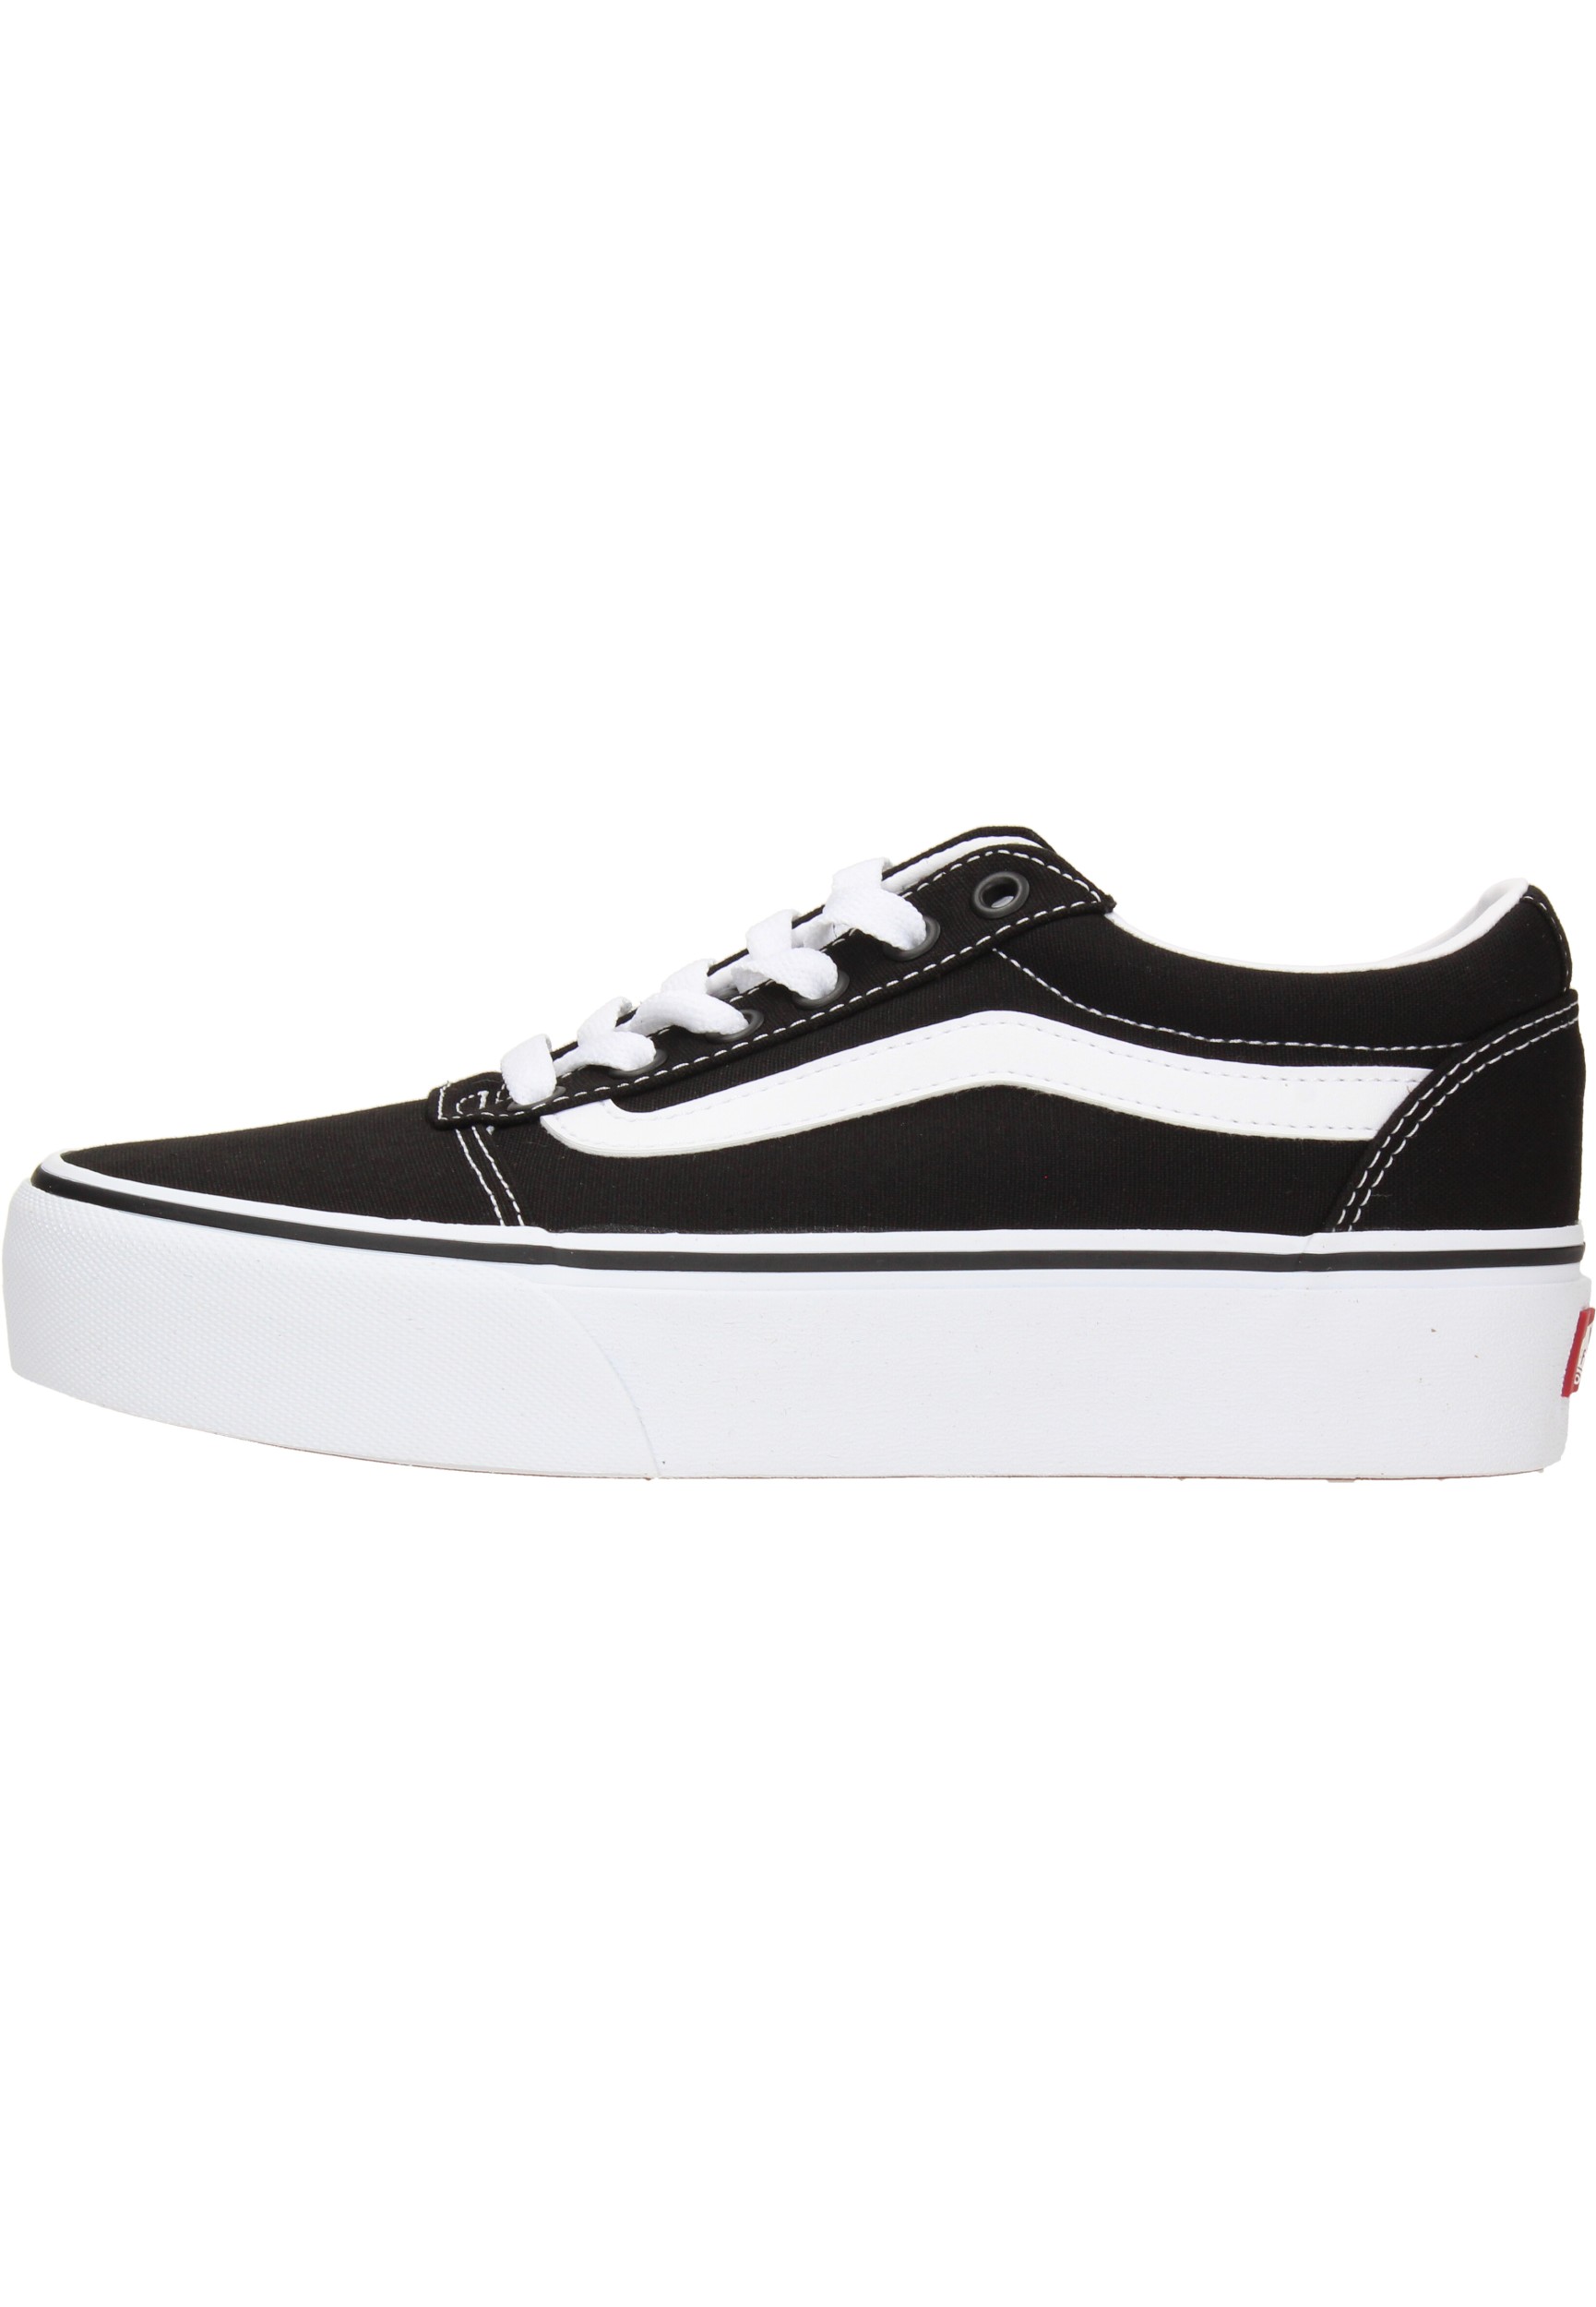 Vans Ward Platform Canvas Dames Sneakers - Black/White - Maat 36